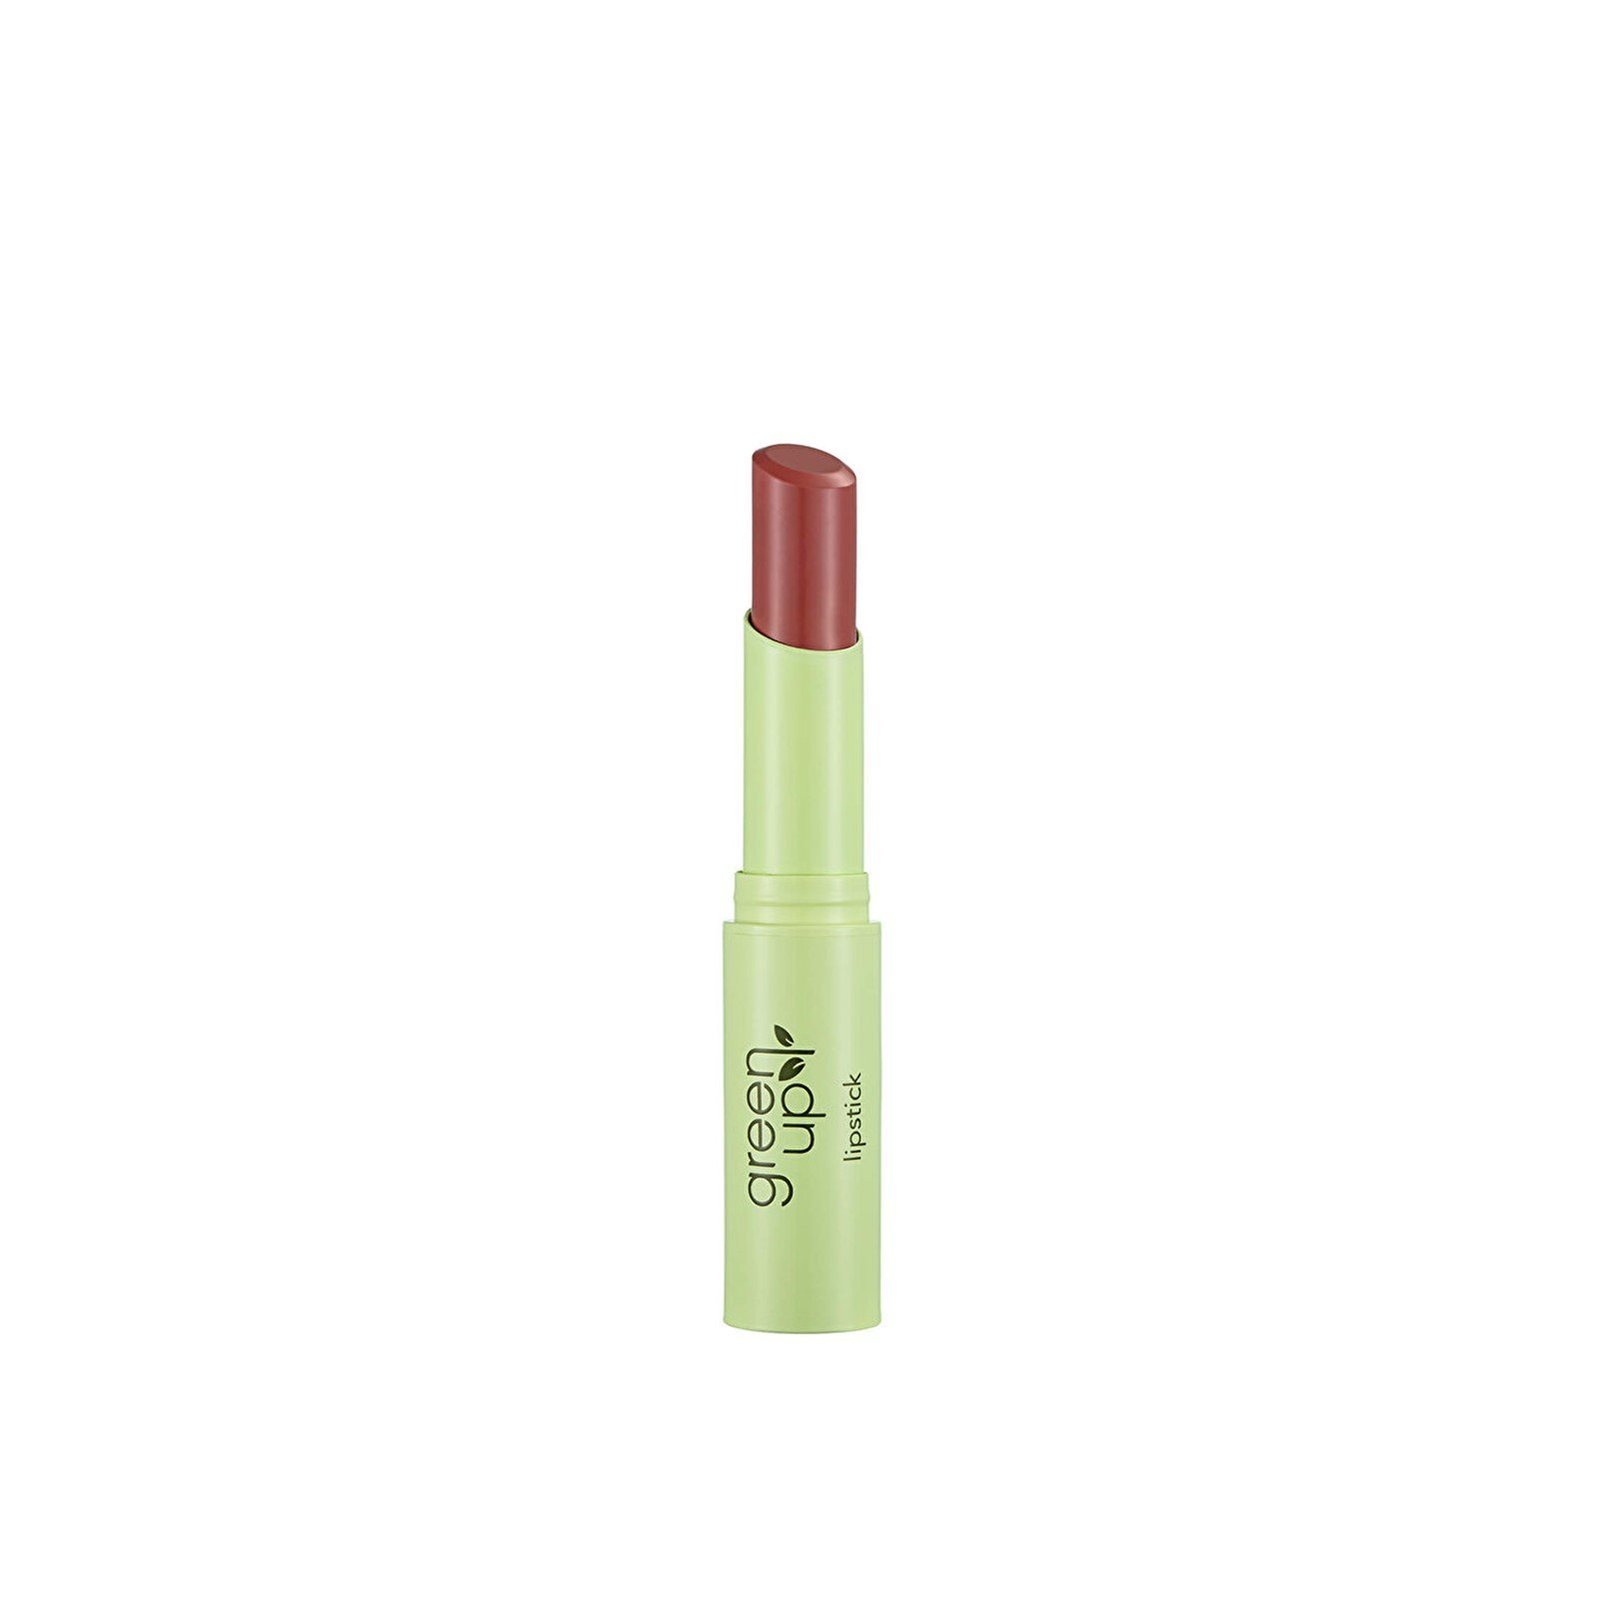 Flormar Green Up Lipstick 003 Natural Kiss 3g (0.11 oz)